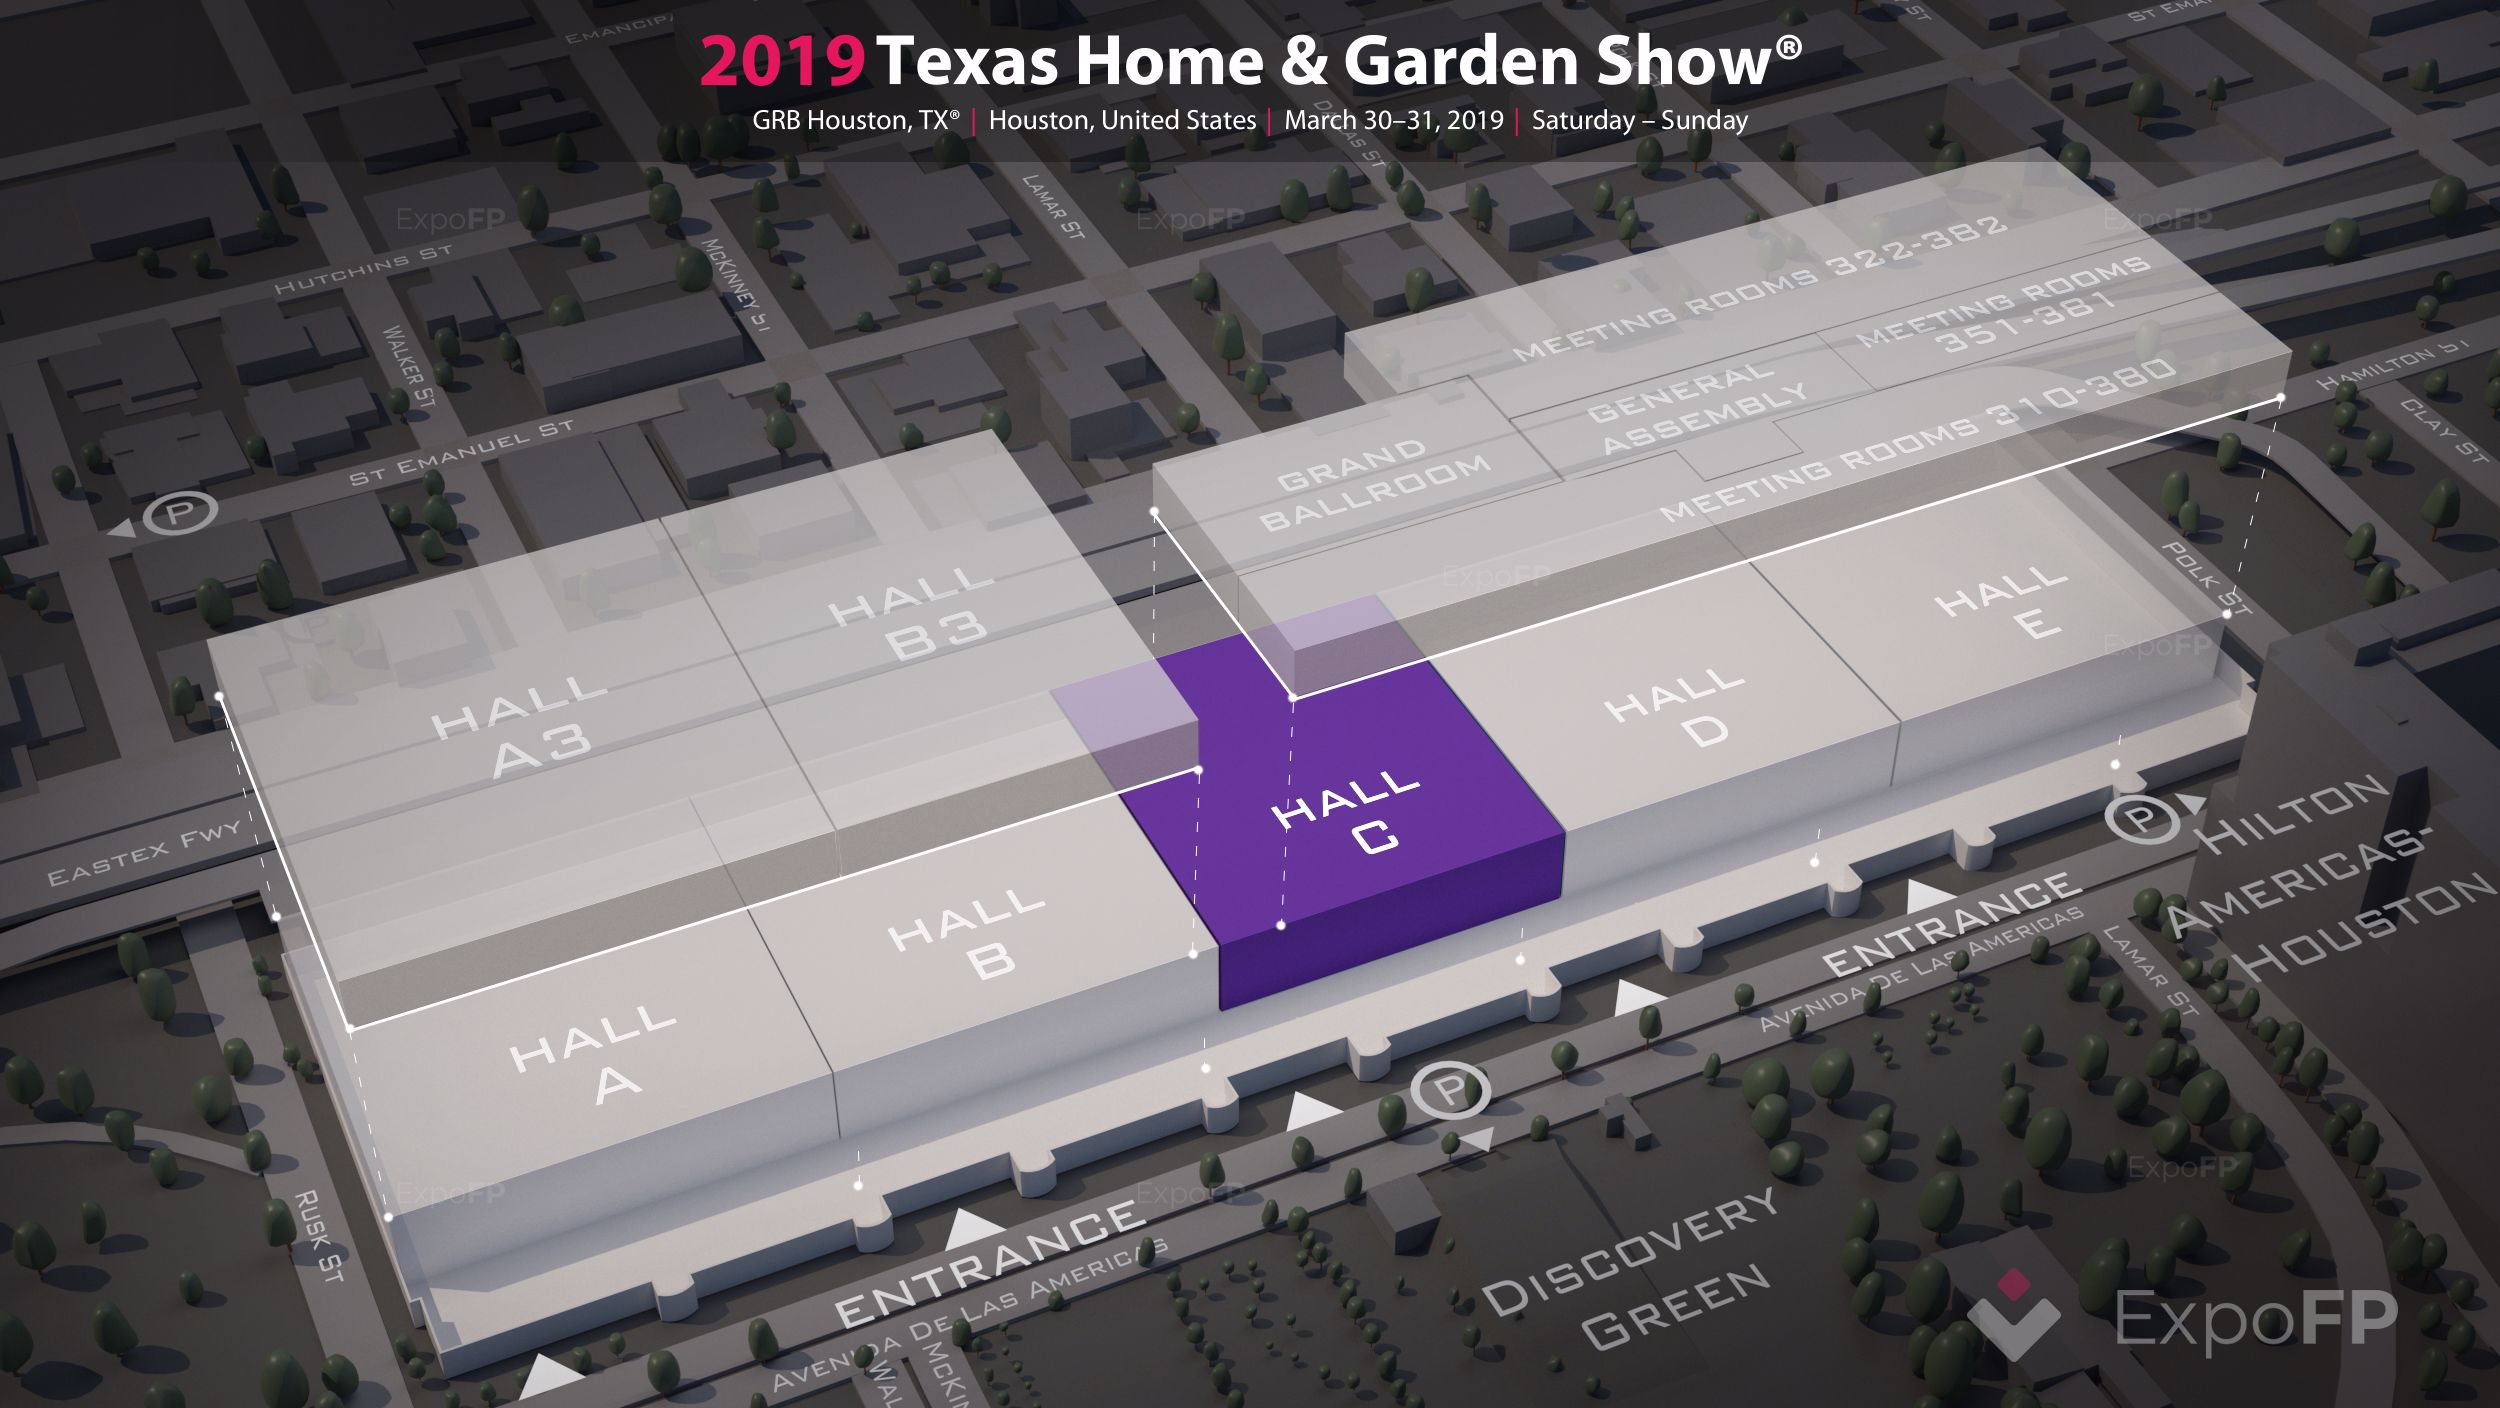 Texas Home & Garden Show 2019 in GRB Houston, TX